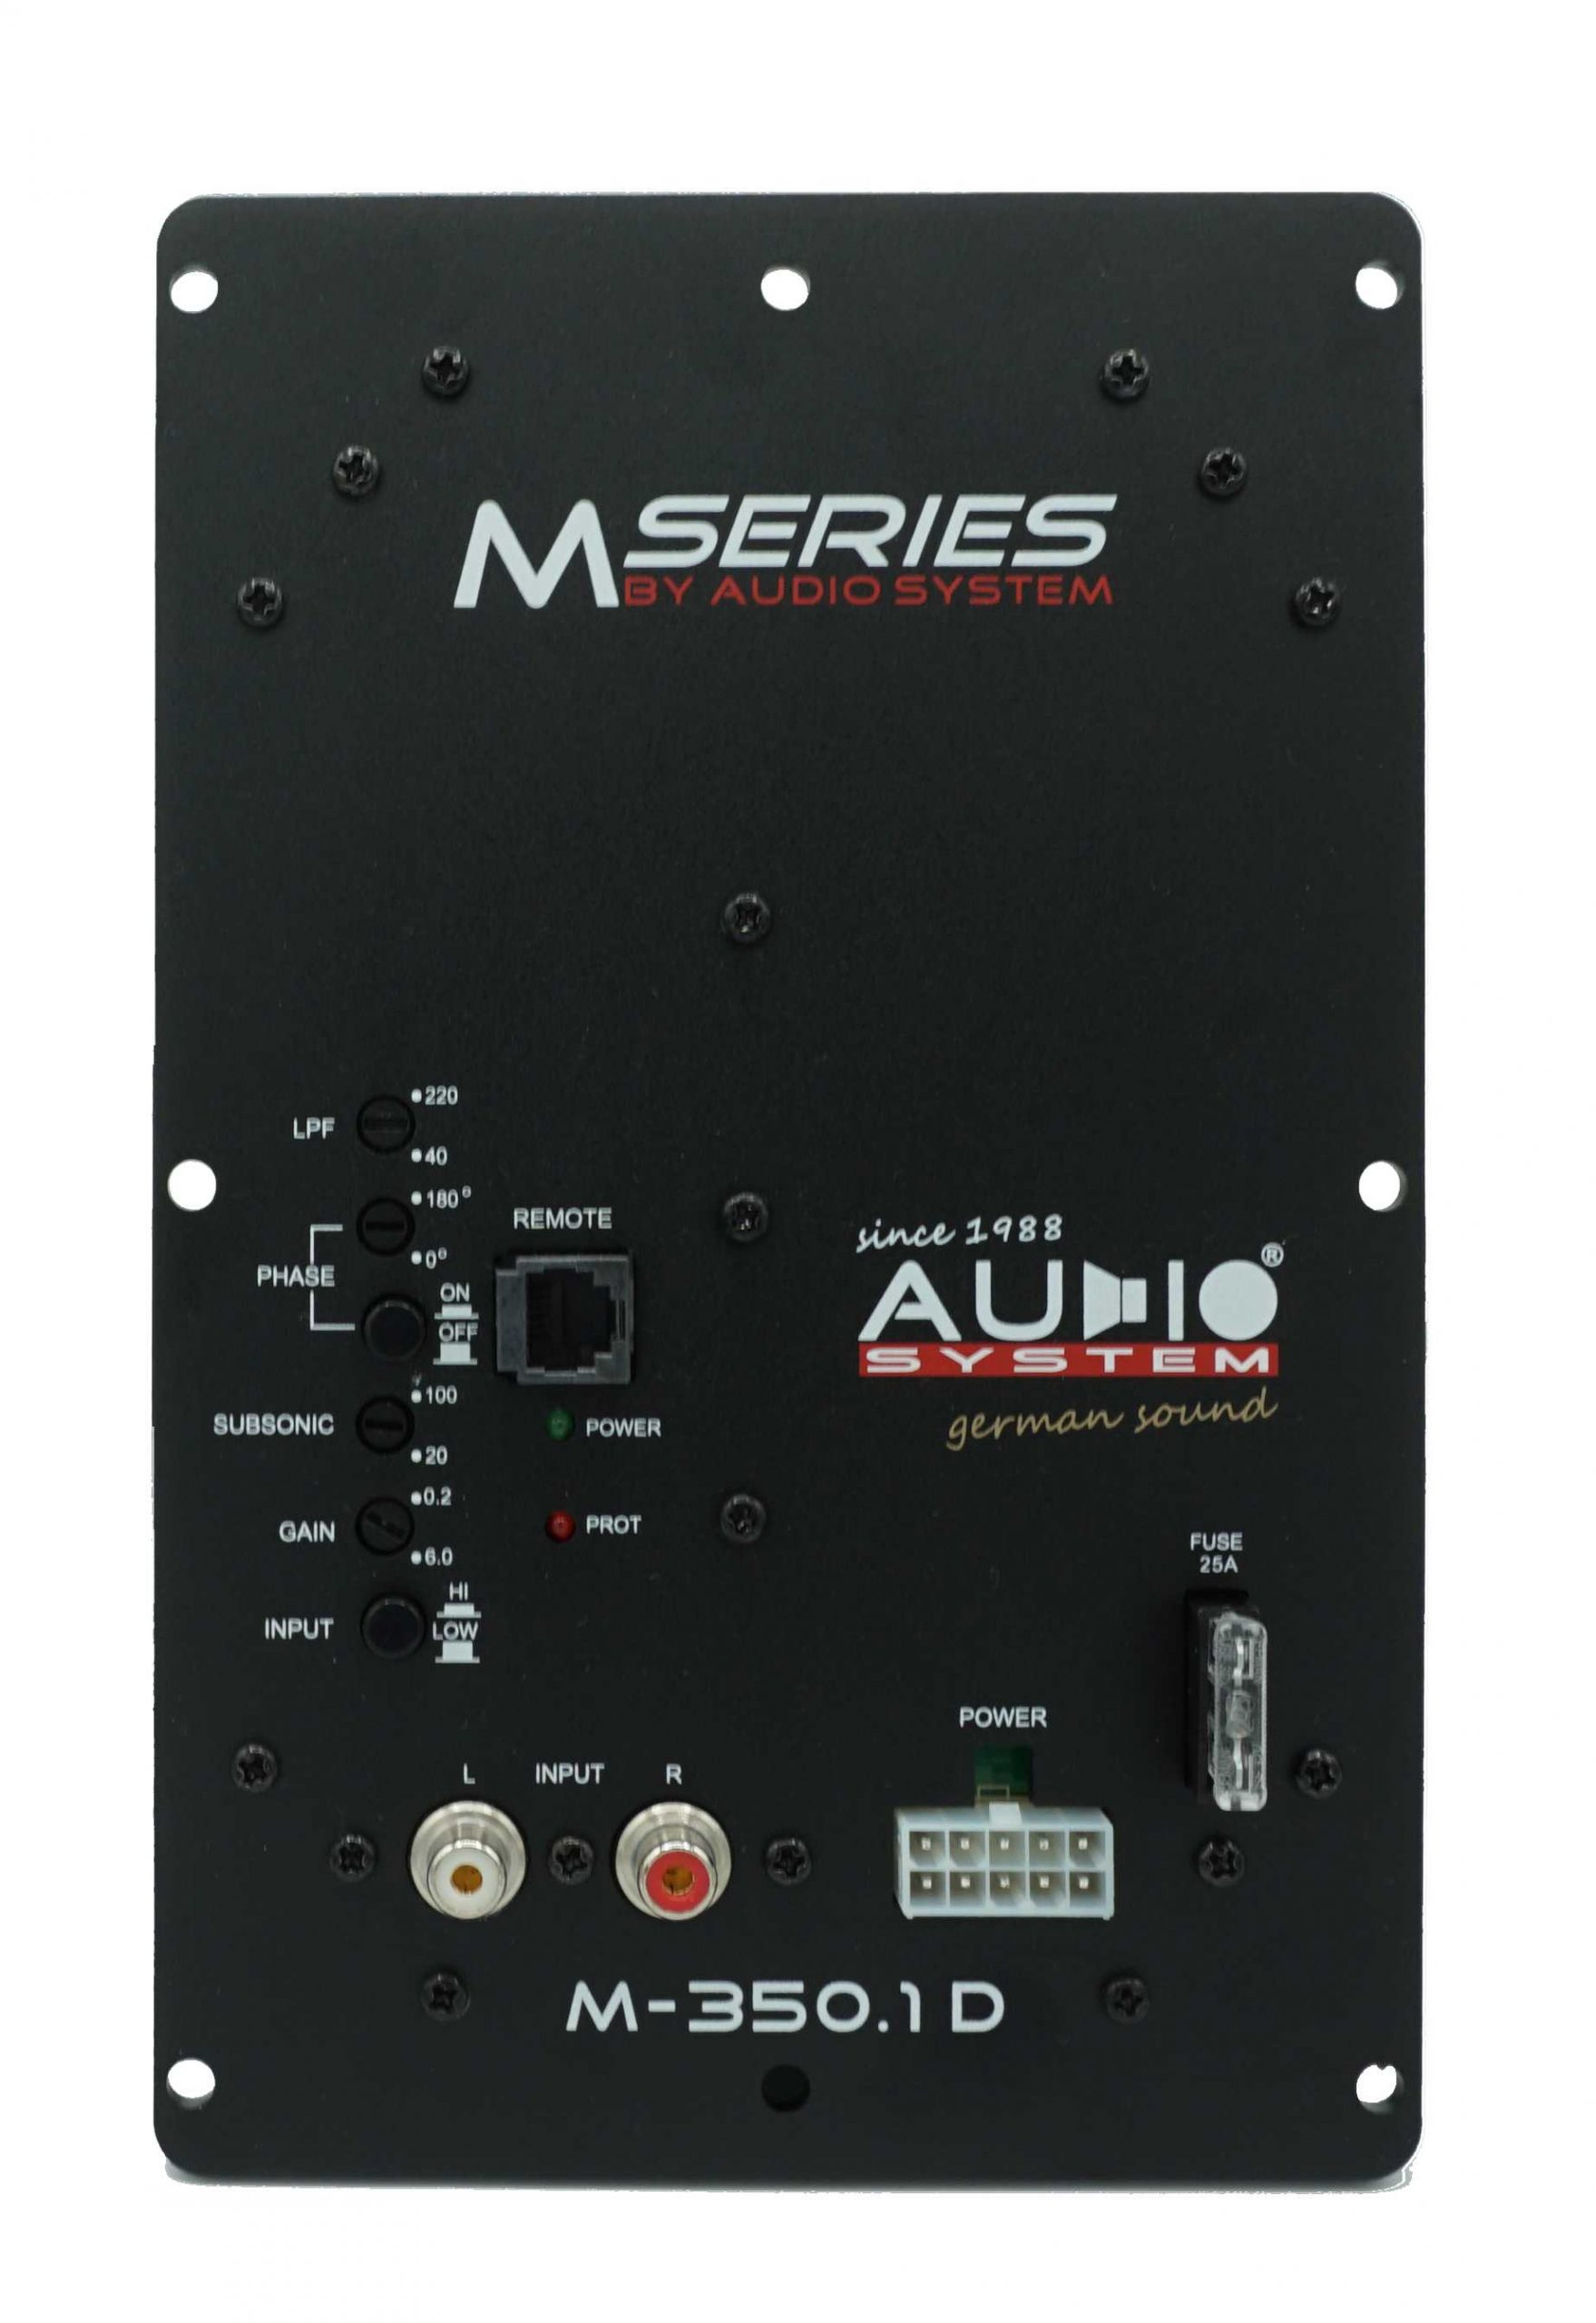 Audio System SUBFRAME M10 EVO ACTIVE 350 EVO Reserverad aktiv Subwoofer 400 Watt Bassgehäuse Bassreflexgehäuse mit M10 EVO + Verstärker + M-350.1 D